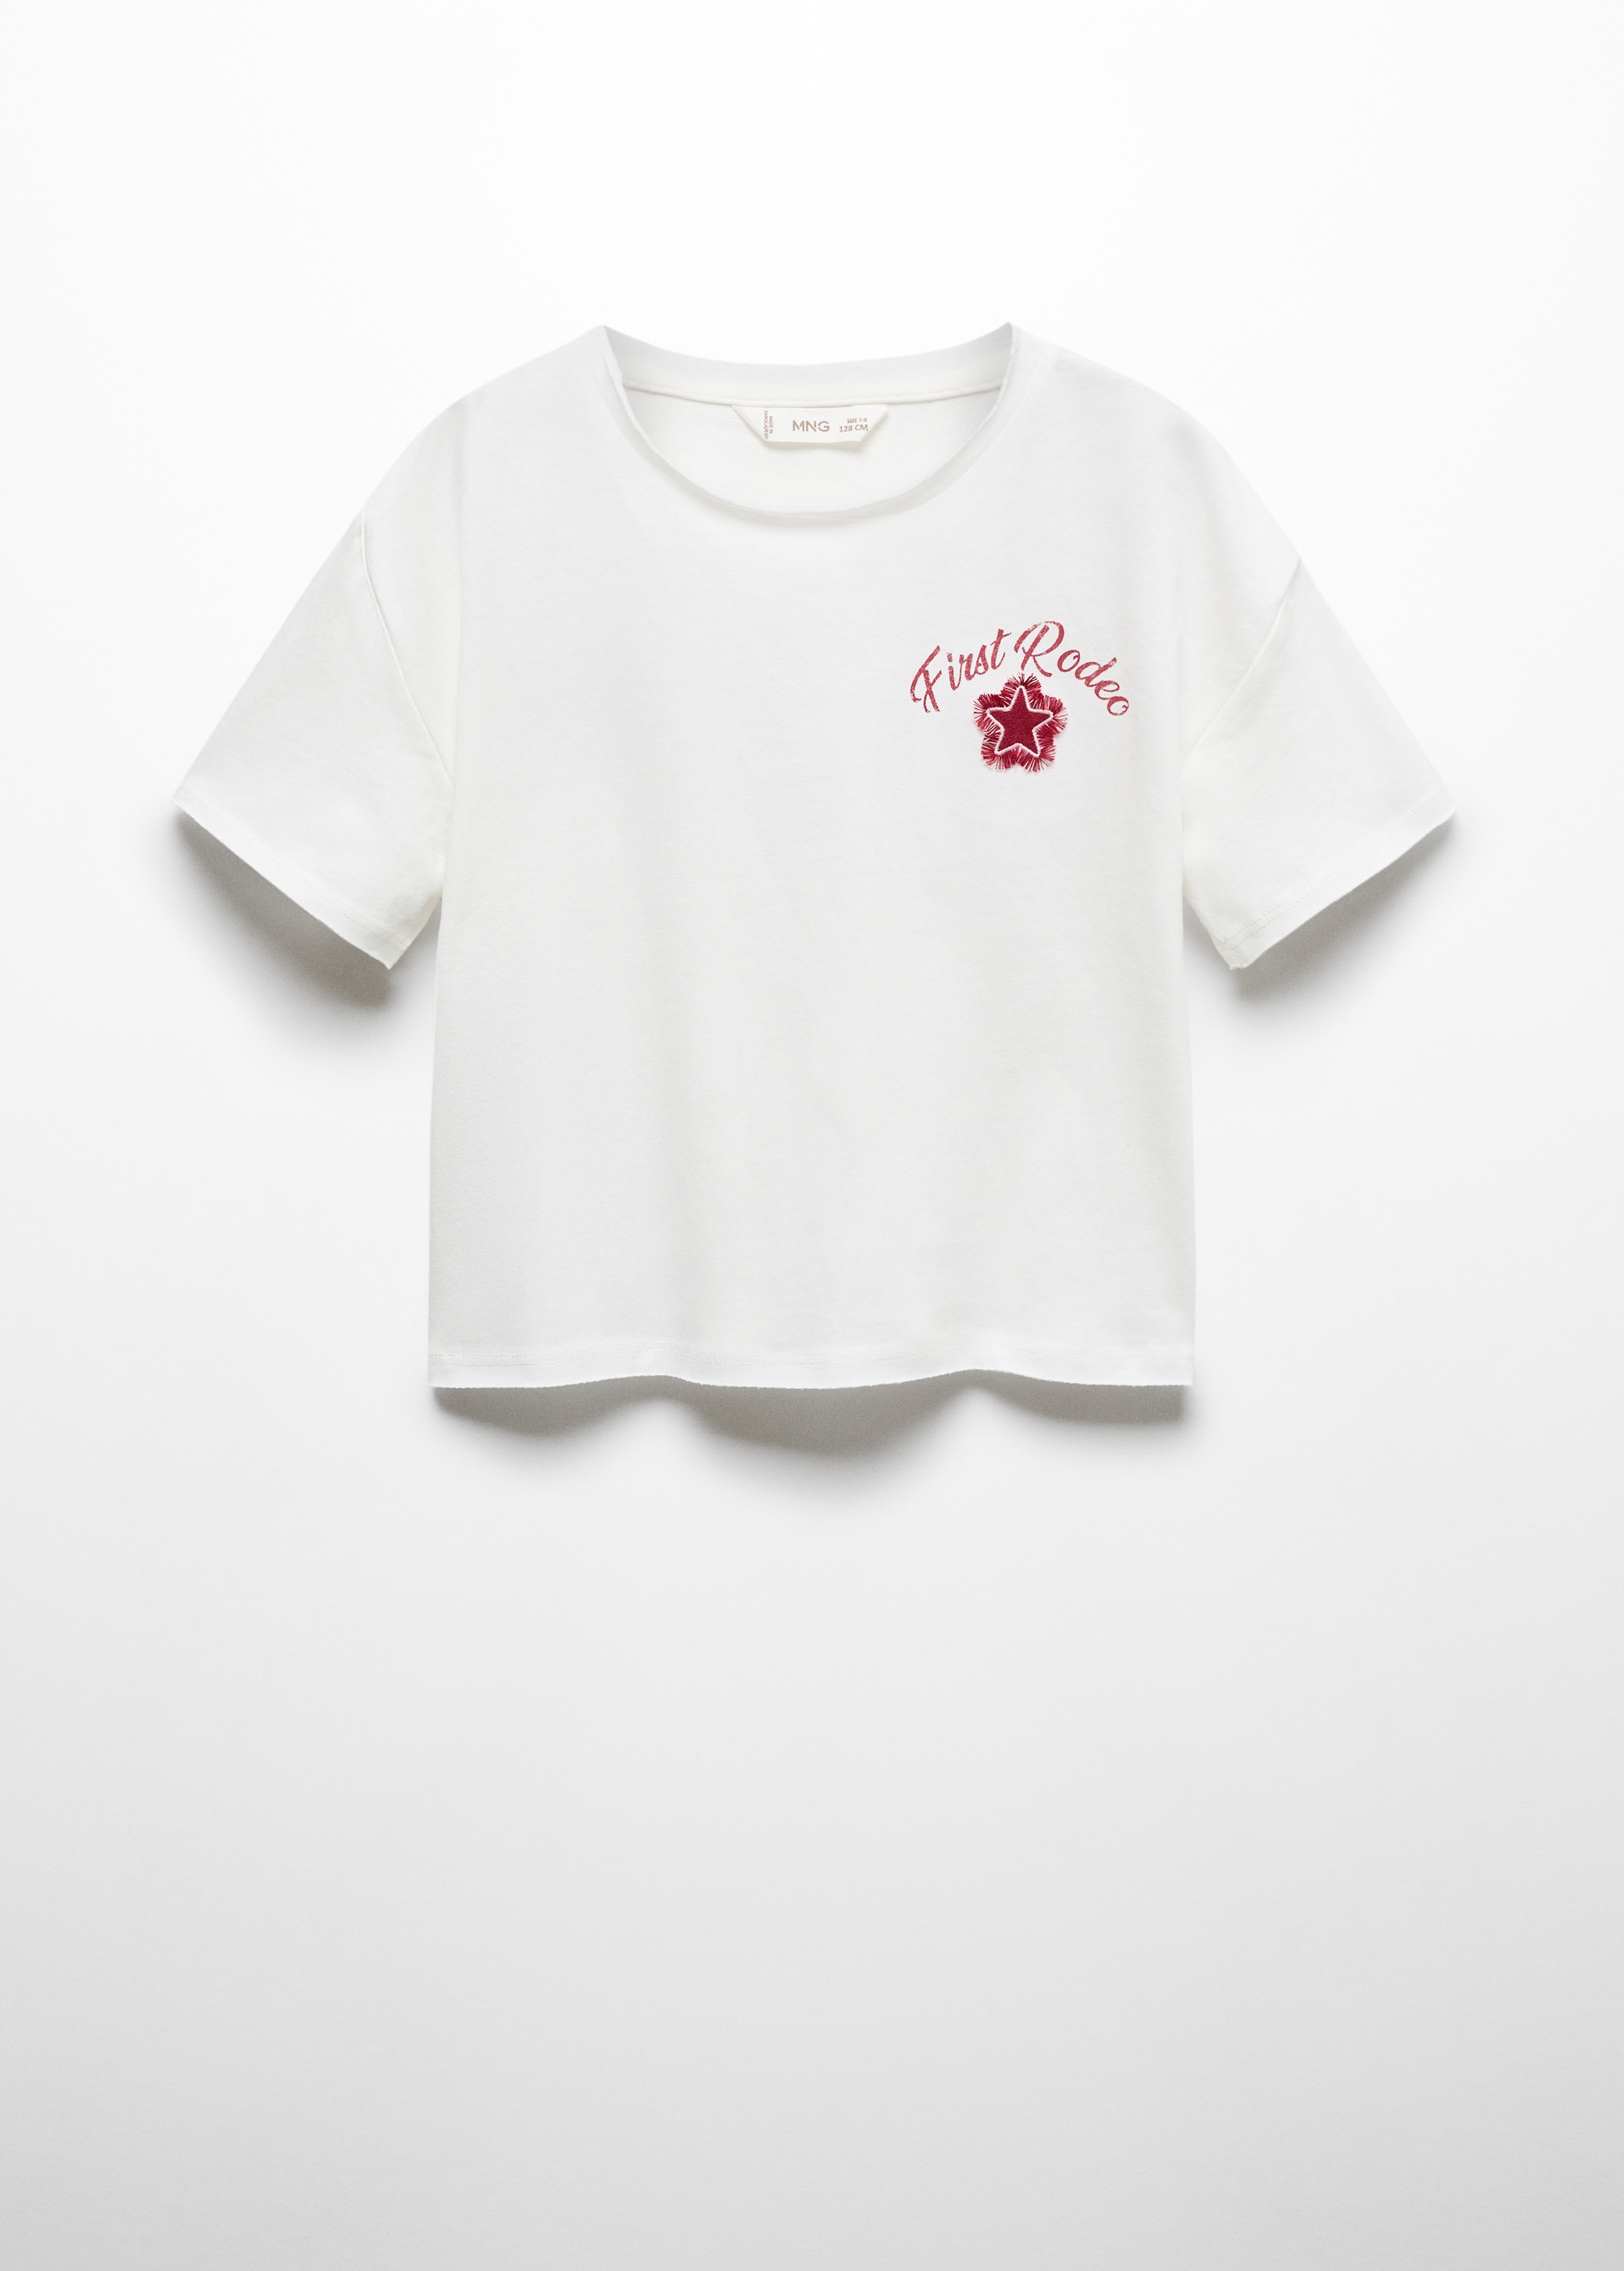 Camiseta estampada estrella - Artículo sin modelo